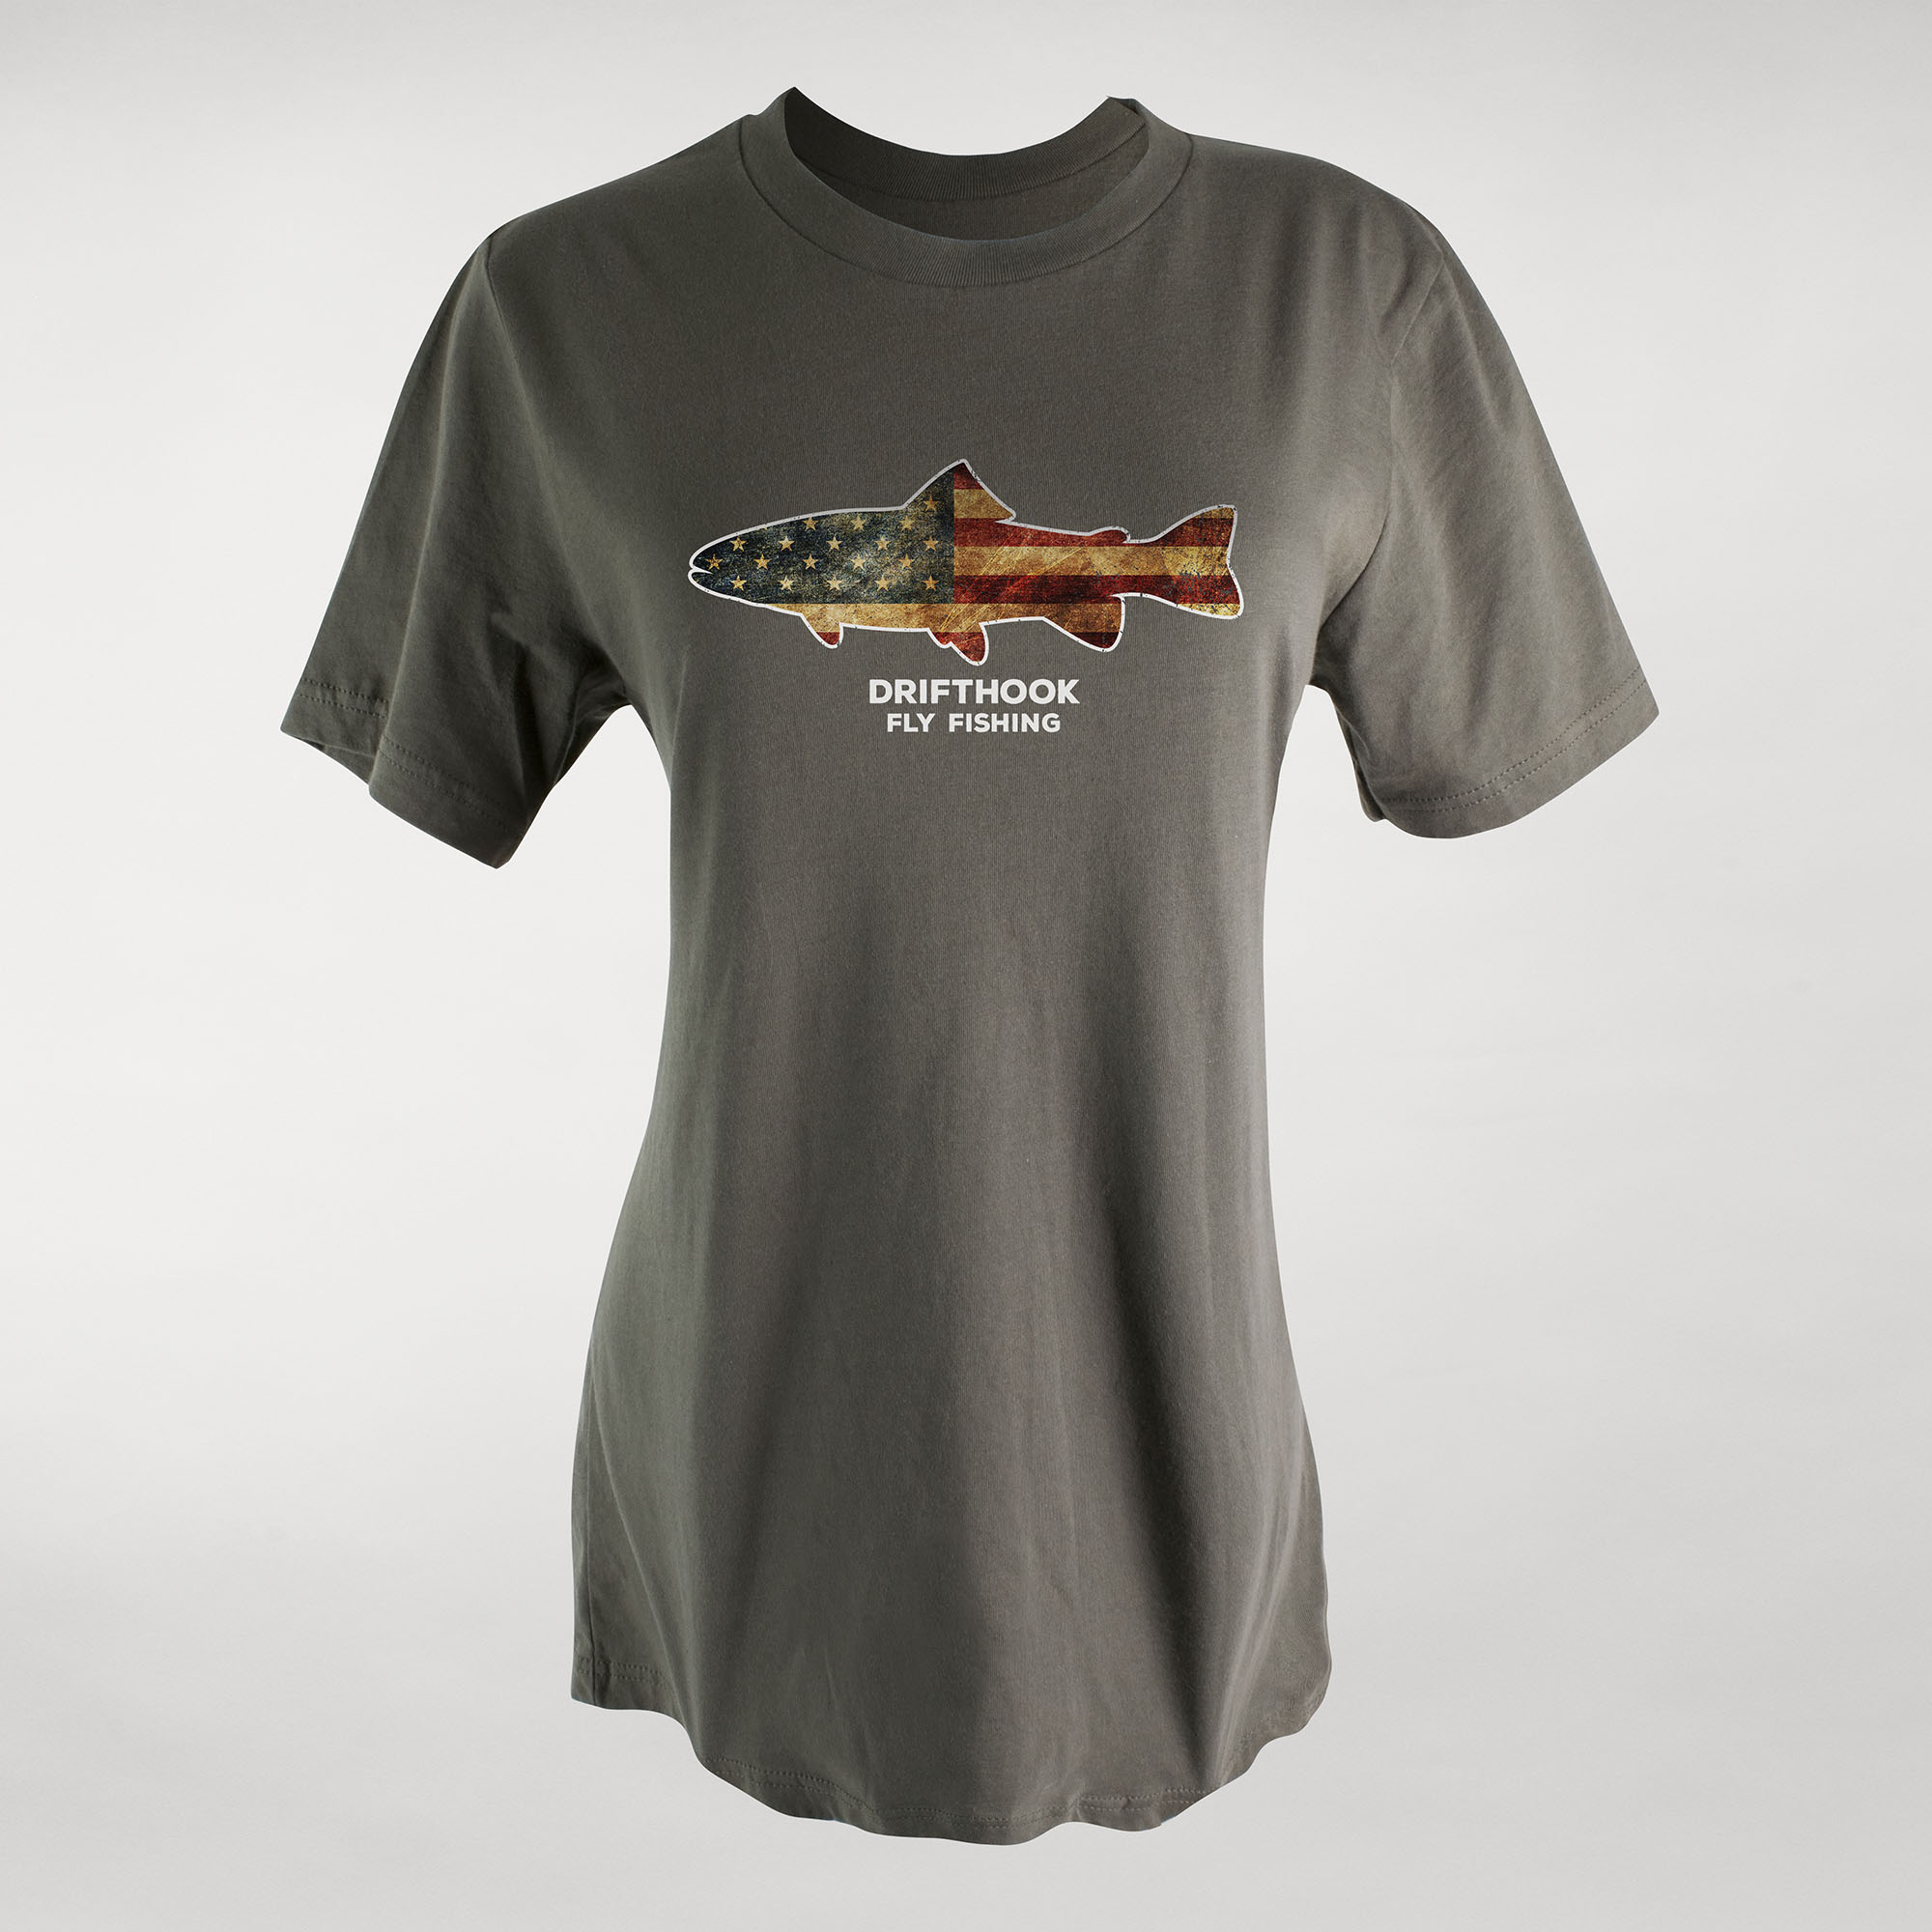 Drifthook USA Women’s T-Shirt - Drifthook